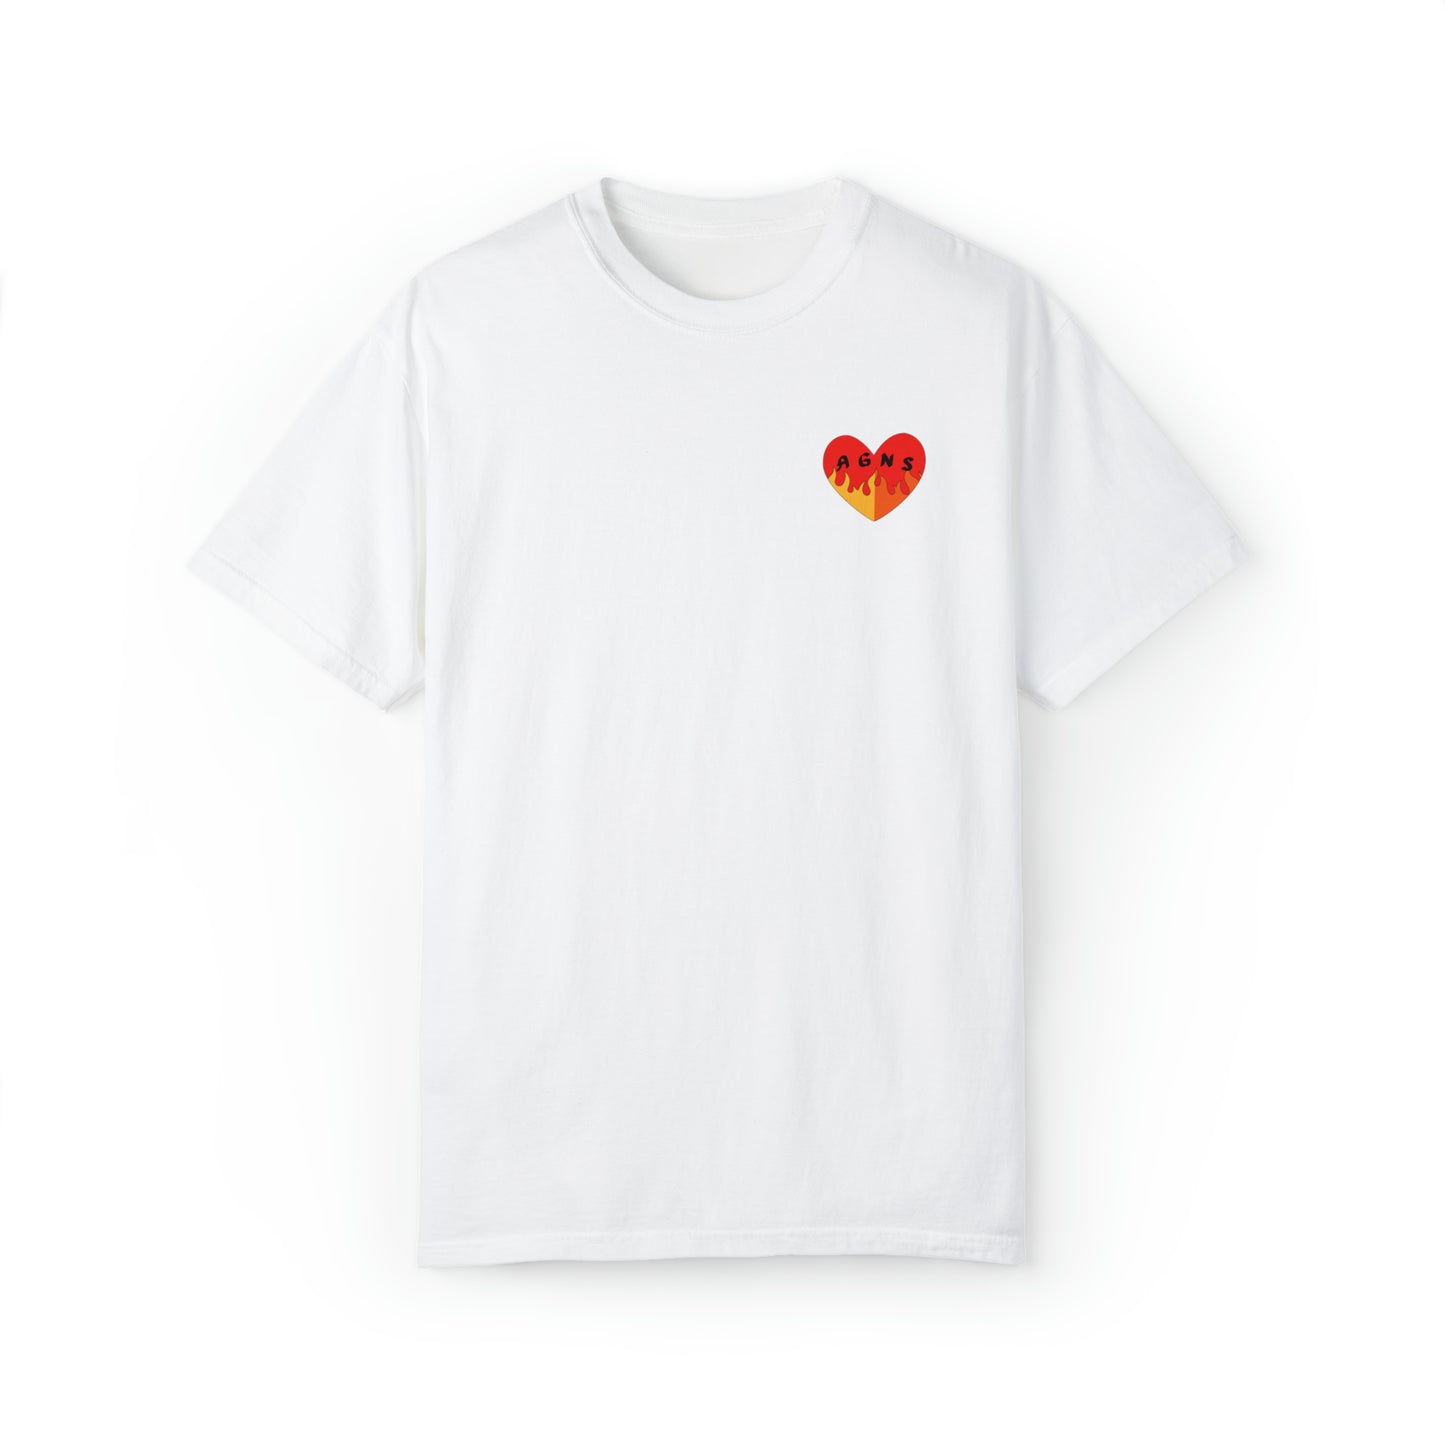 Fire Logo - Unisex Garment-Dyed T-shirt